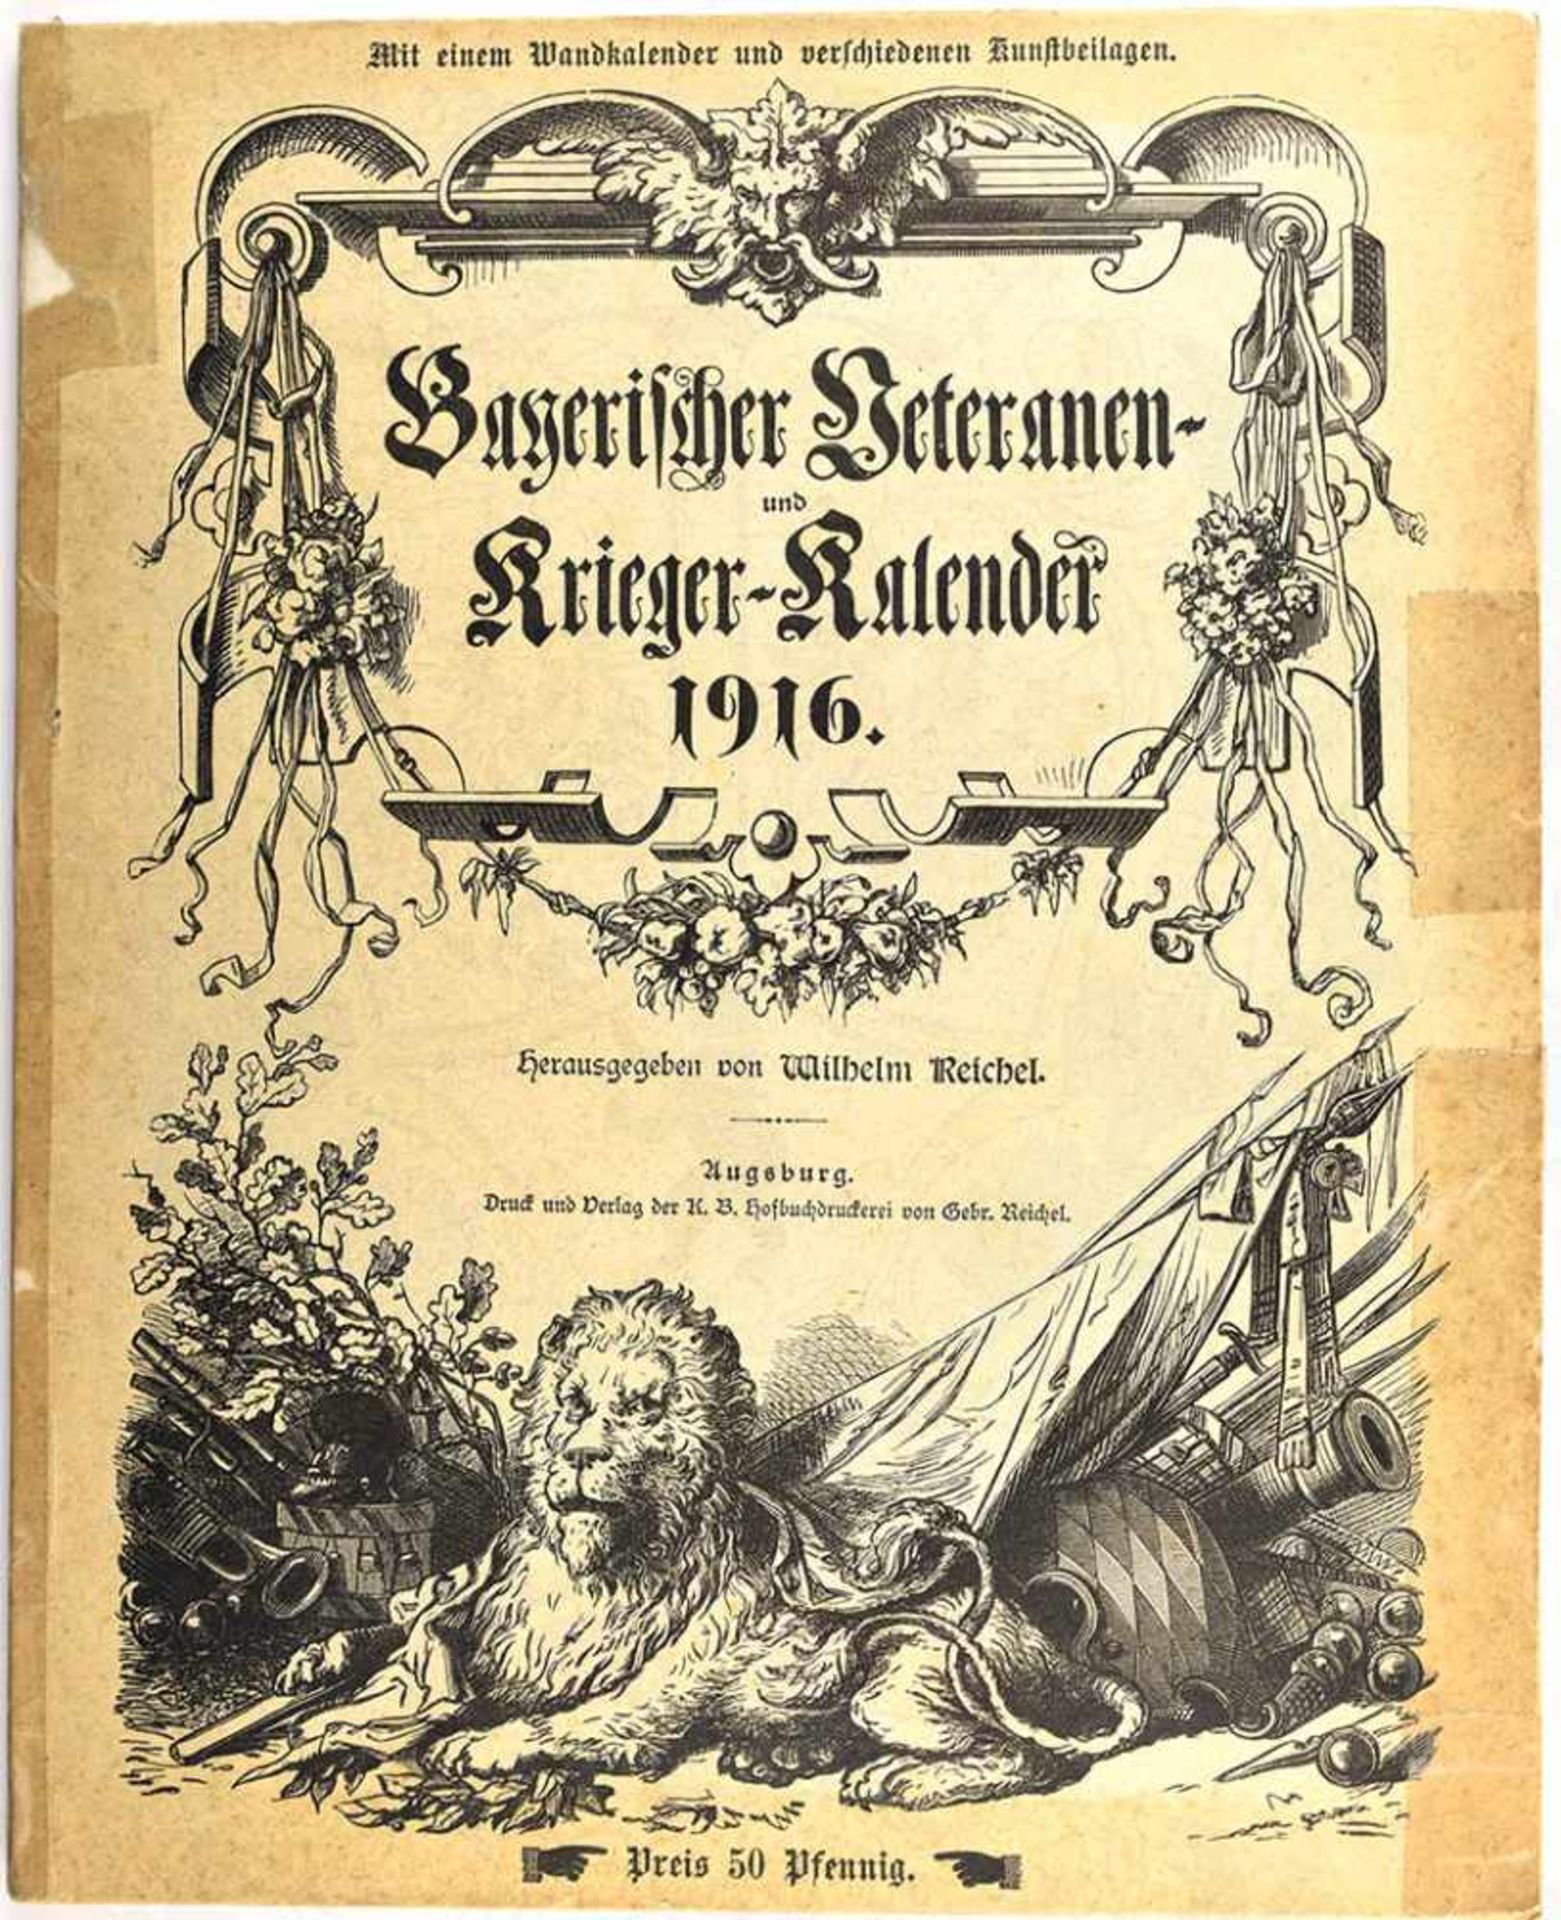 BAYRISCHER VETERANEN- UND KRIEGER-KALENDER, 1916, ca. 150 S., Abb., ungebraucht, Umschlag m.